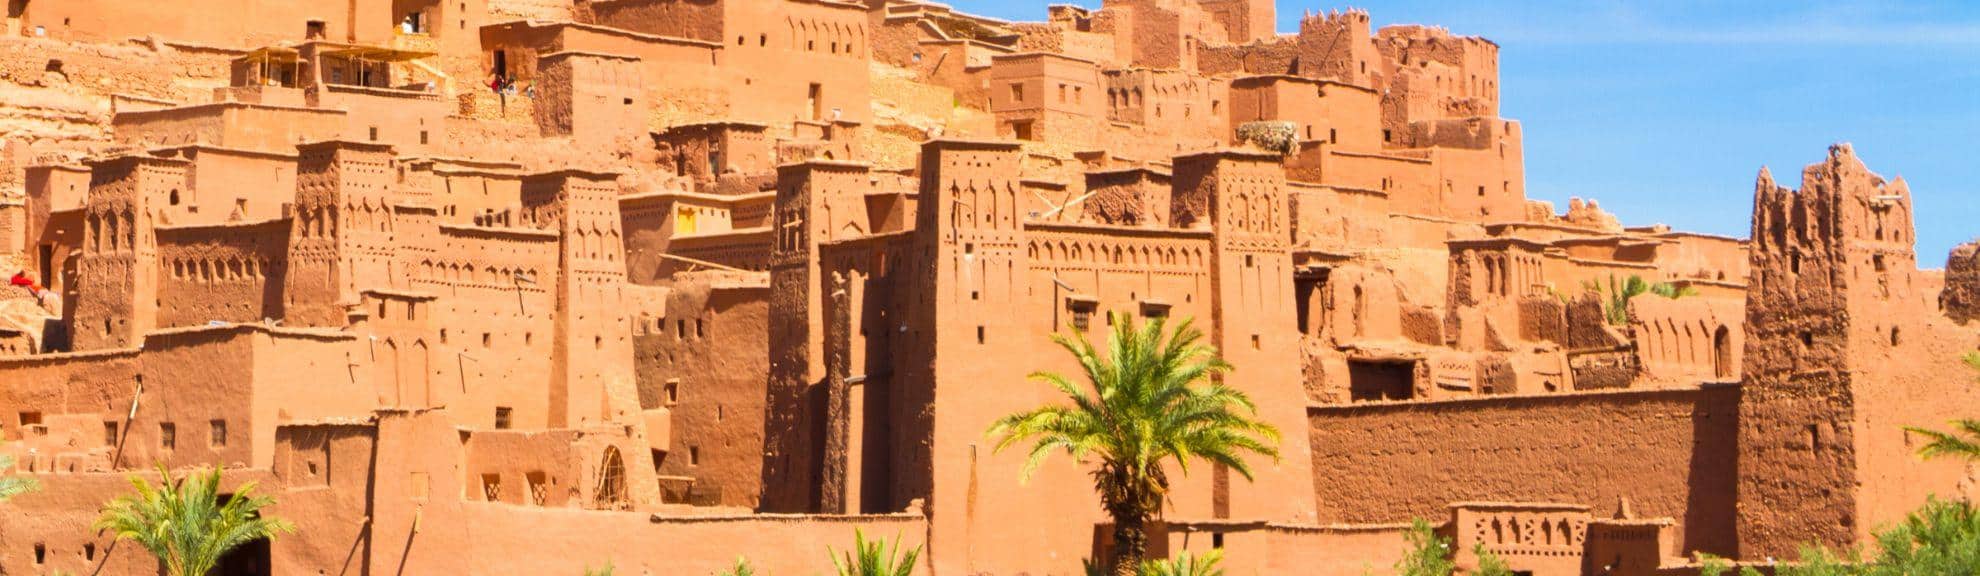 Excursion Ouarzazate depuis Marrakech – Ait Ben Haddou